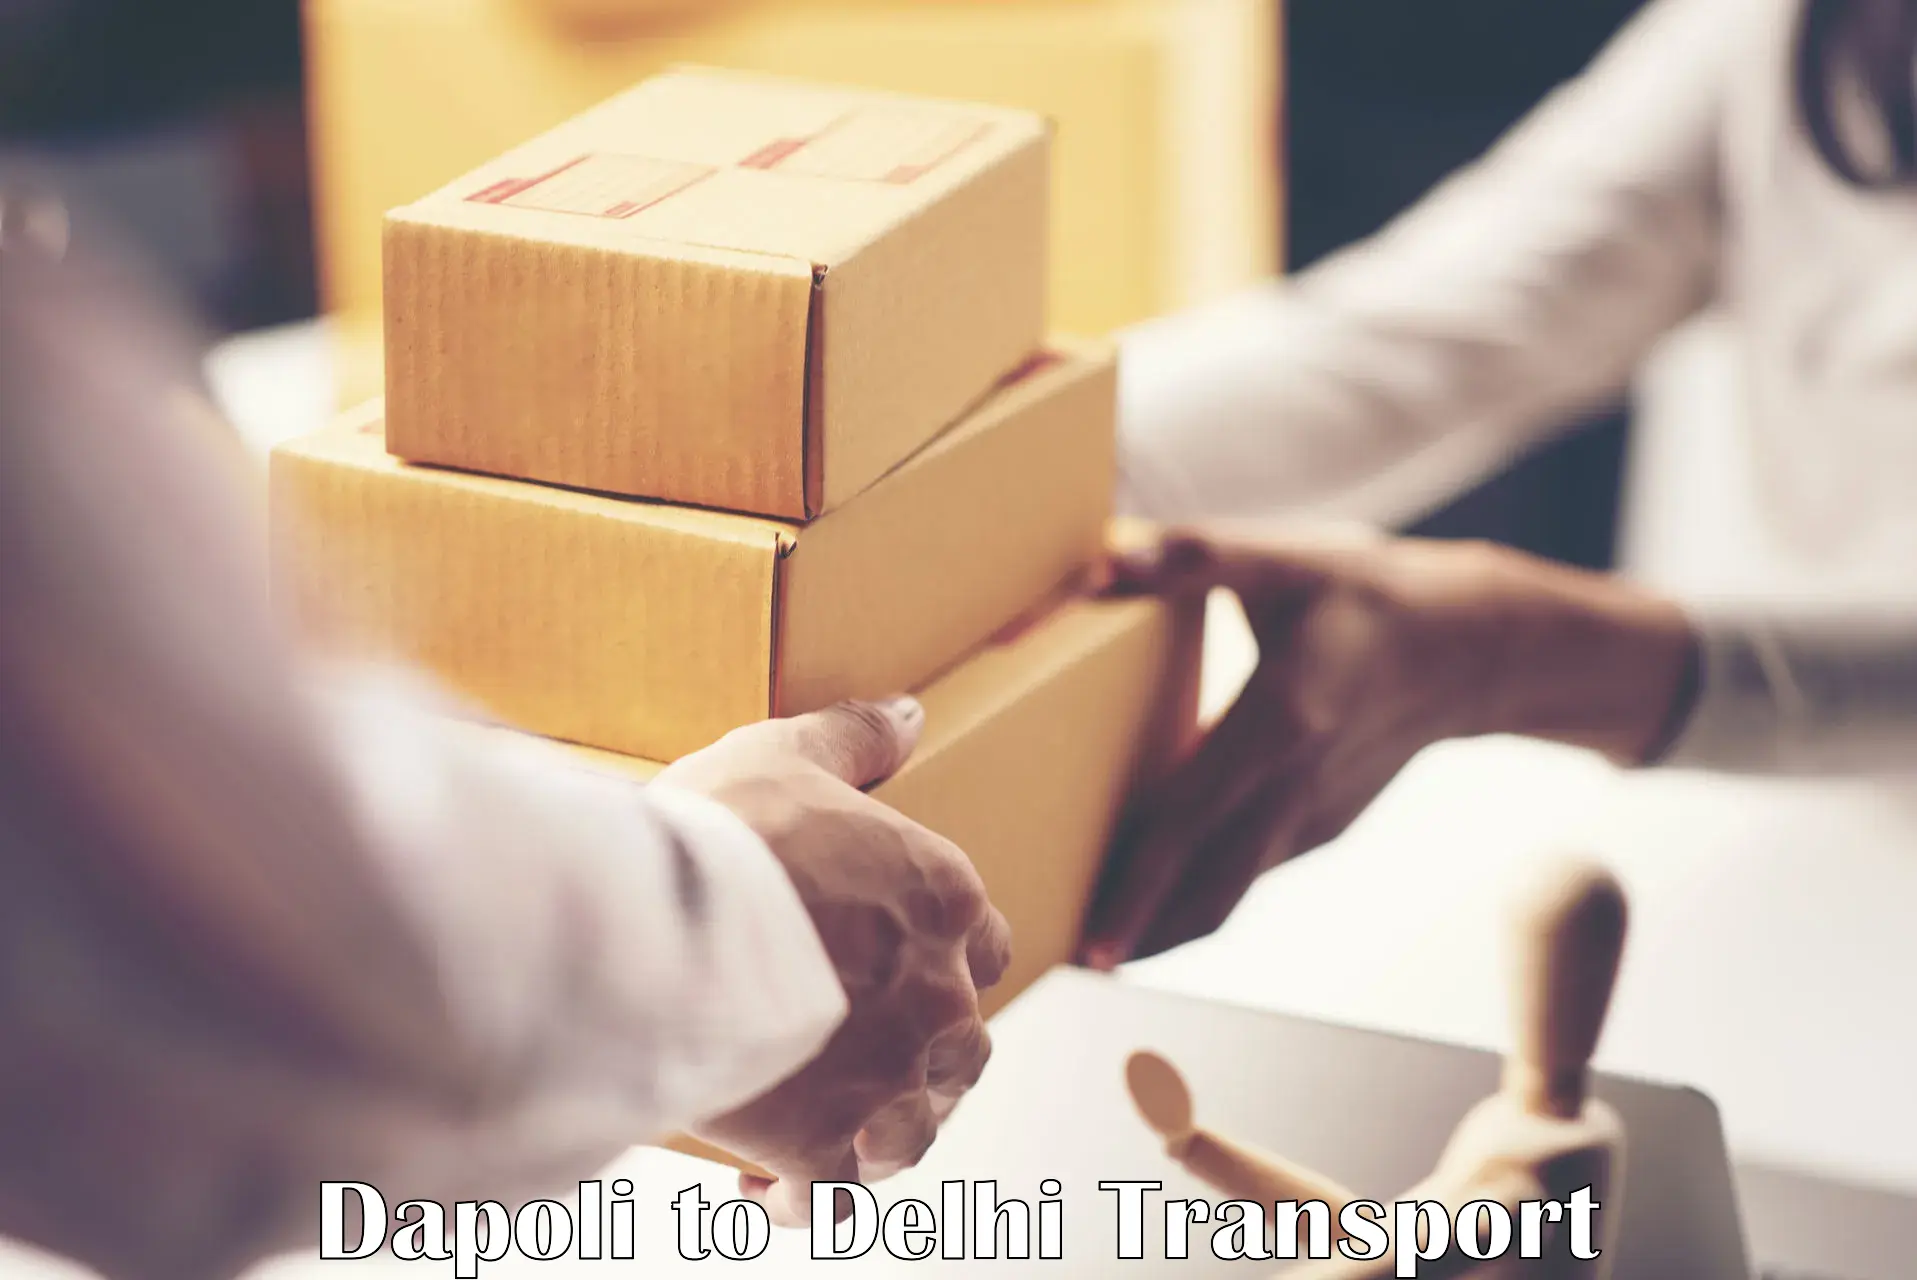 Domestic transport services in Dapoli to Delhi